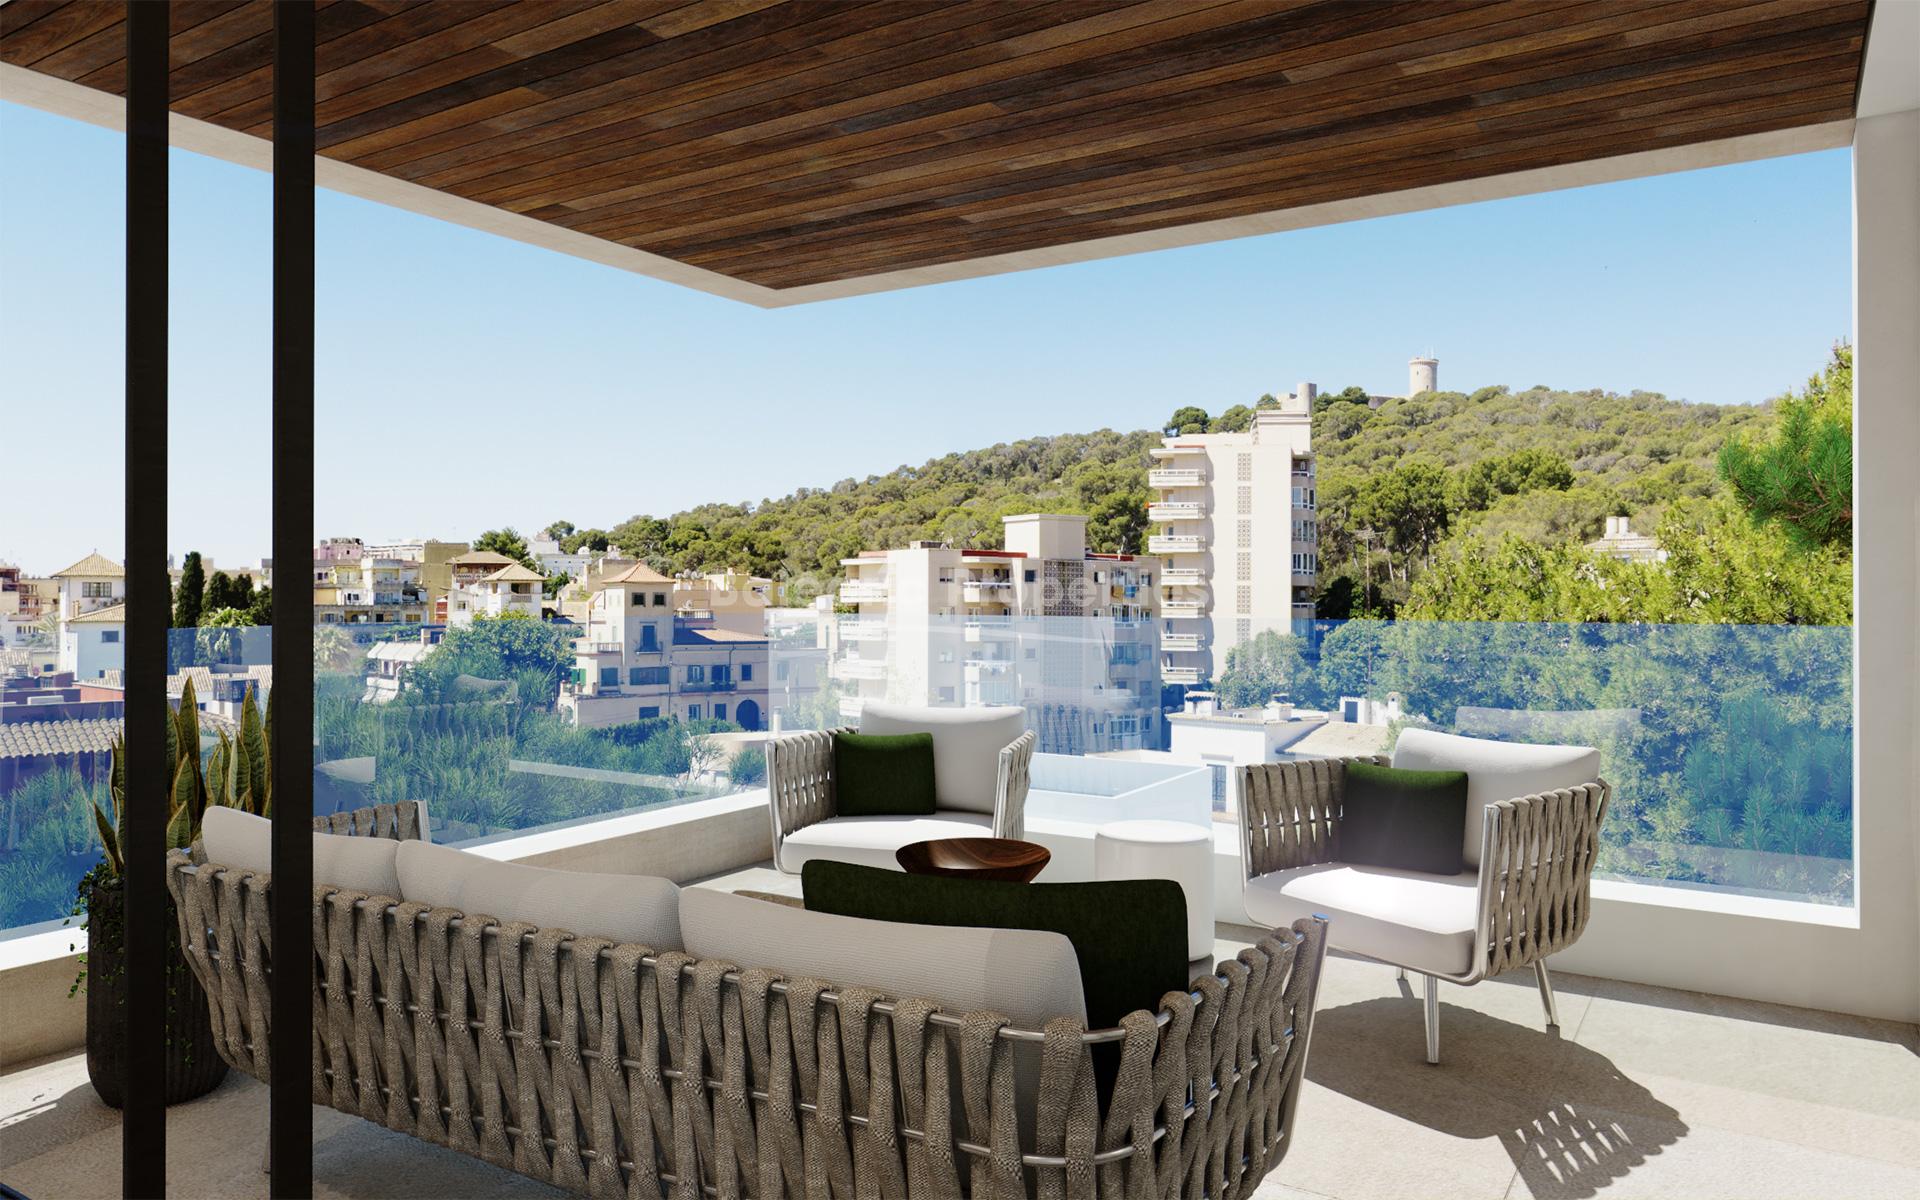 Impressive new development with community pool in Palma, Mallorca